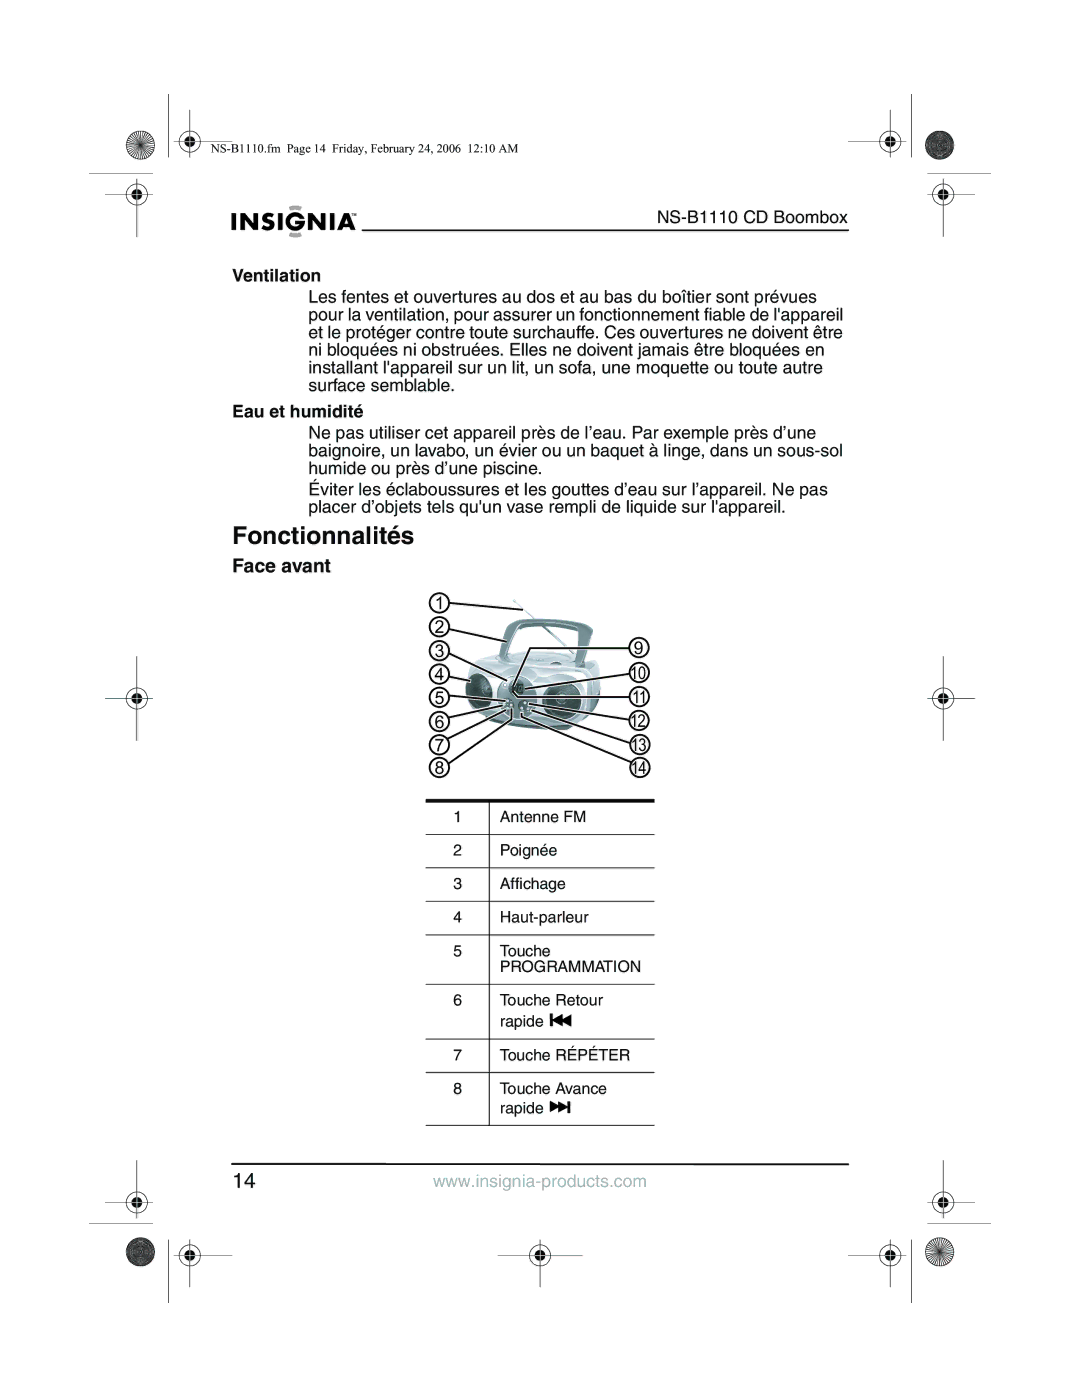 Insignia NS-B1110 manual Fonctionnalités, Face avant, Eau et humidité 